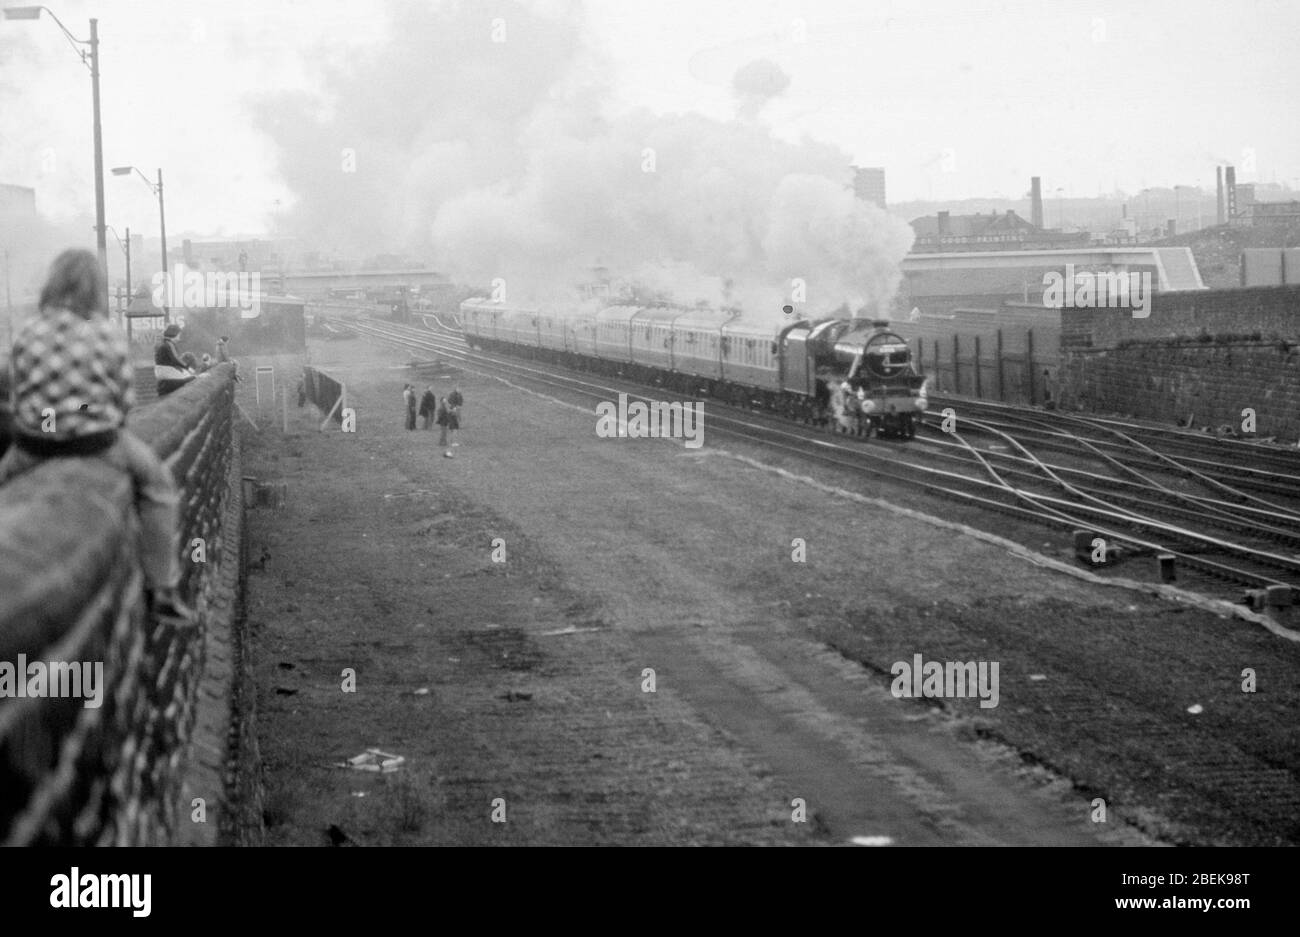 1976, les amateurs de chemins de fer regardaient les trains à vapeur de la ligne principale, Leeds, Angleterre du Nord, Royaume-Uni Banque D'Images